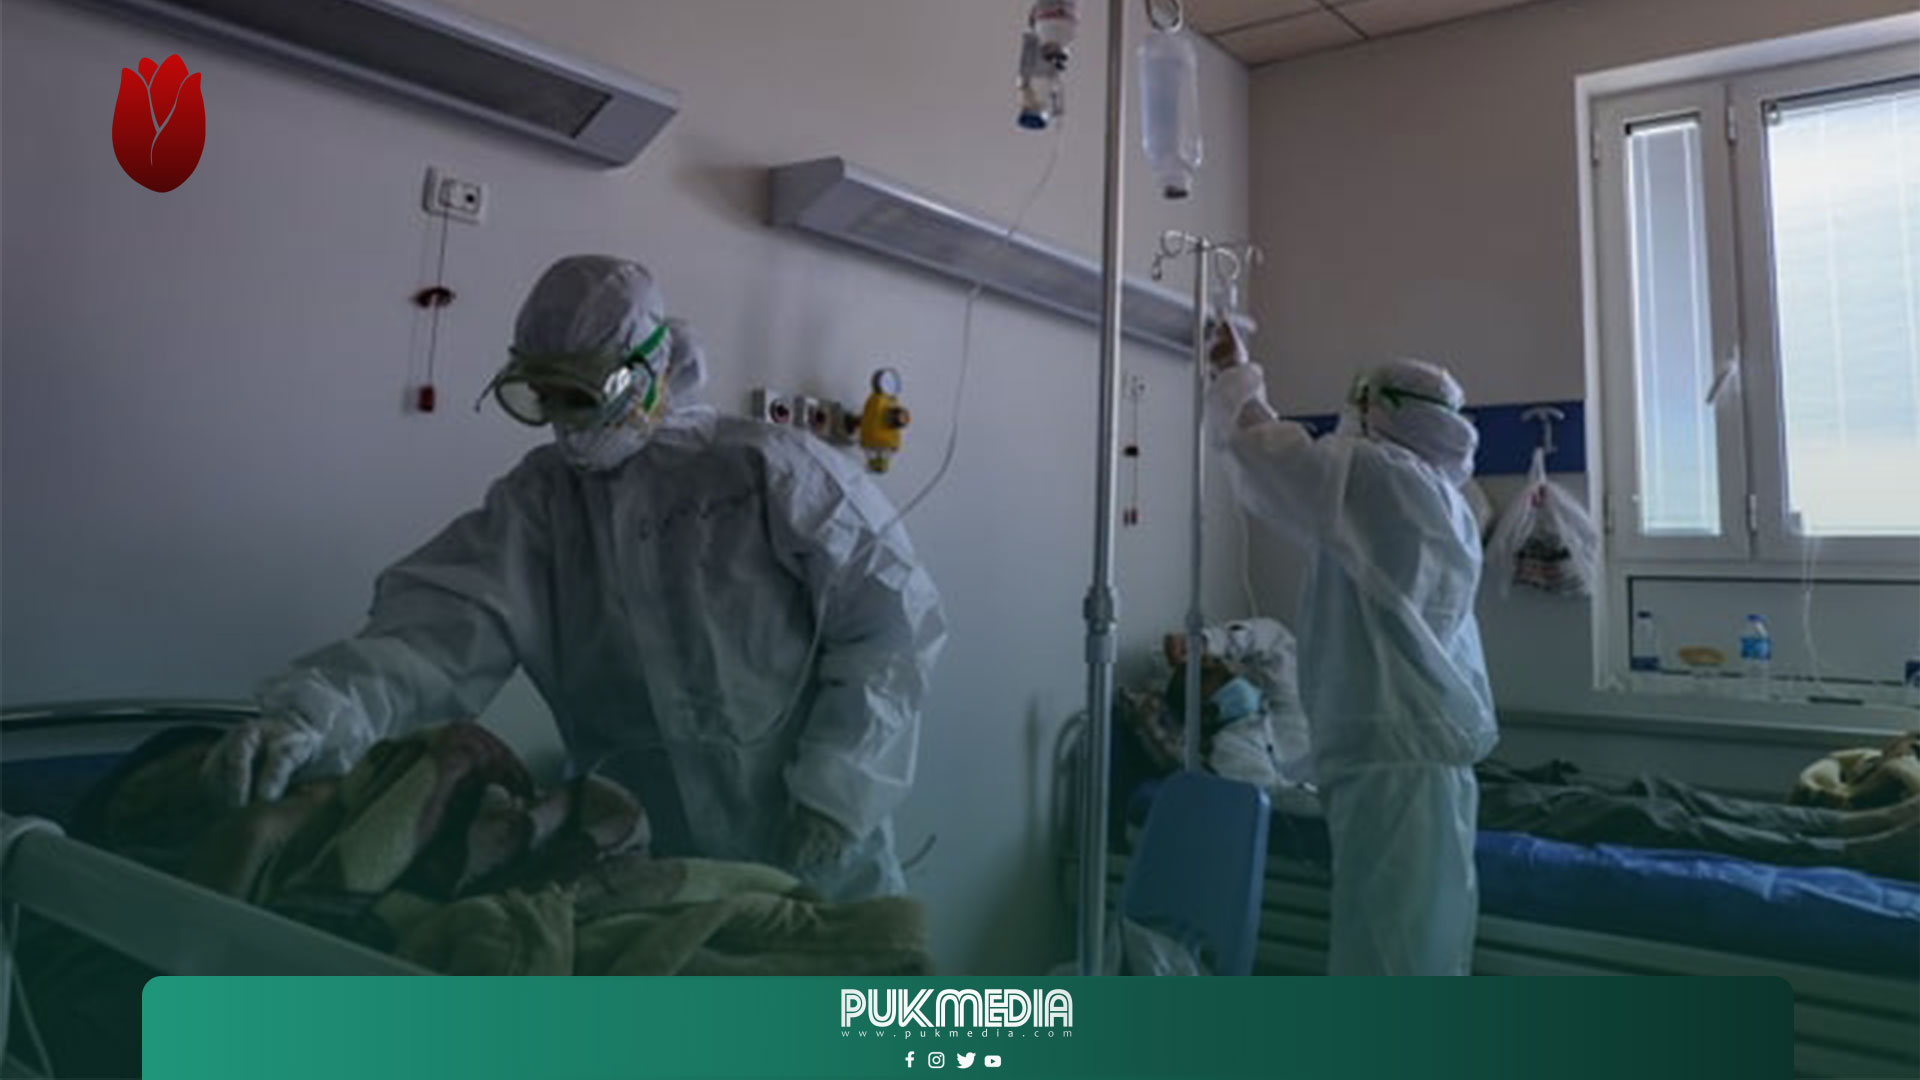 PUKmedia يطلق حملة للتشجيع على التطعيم بلقاحات كورونا